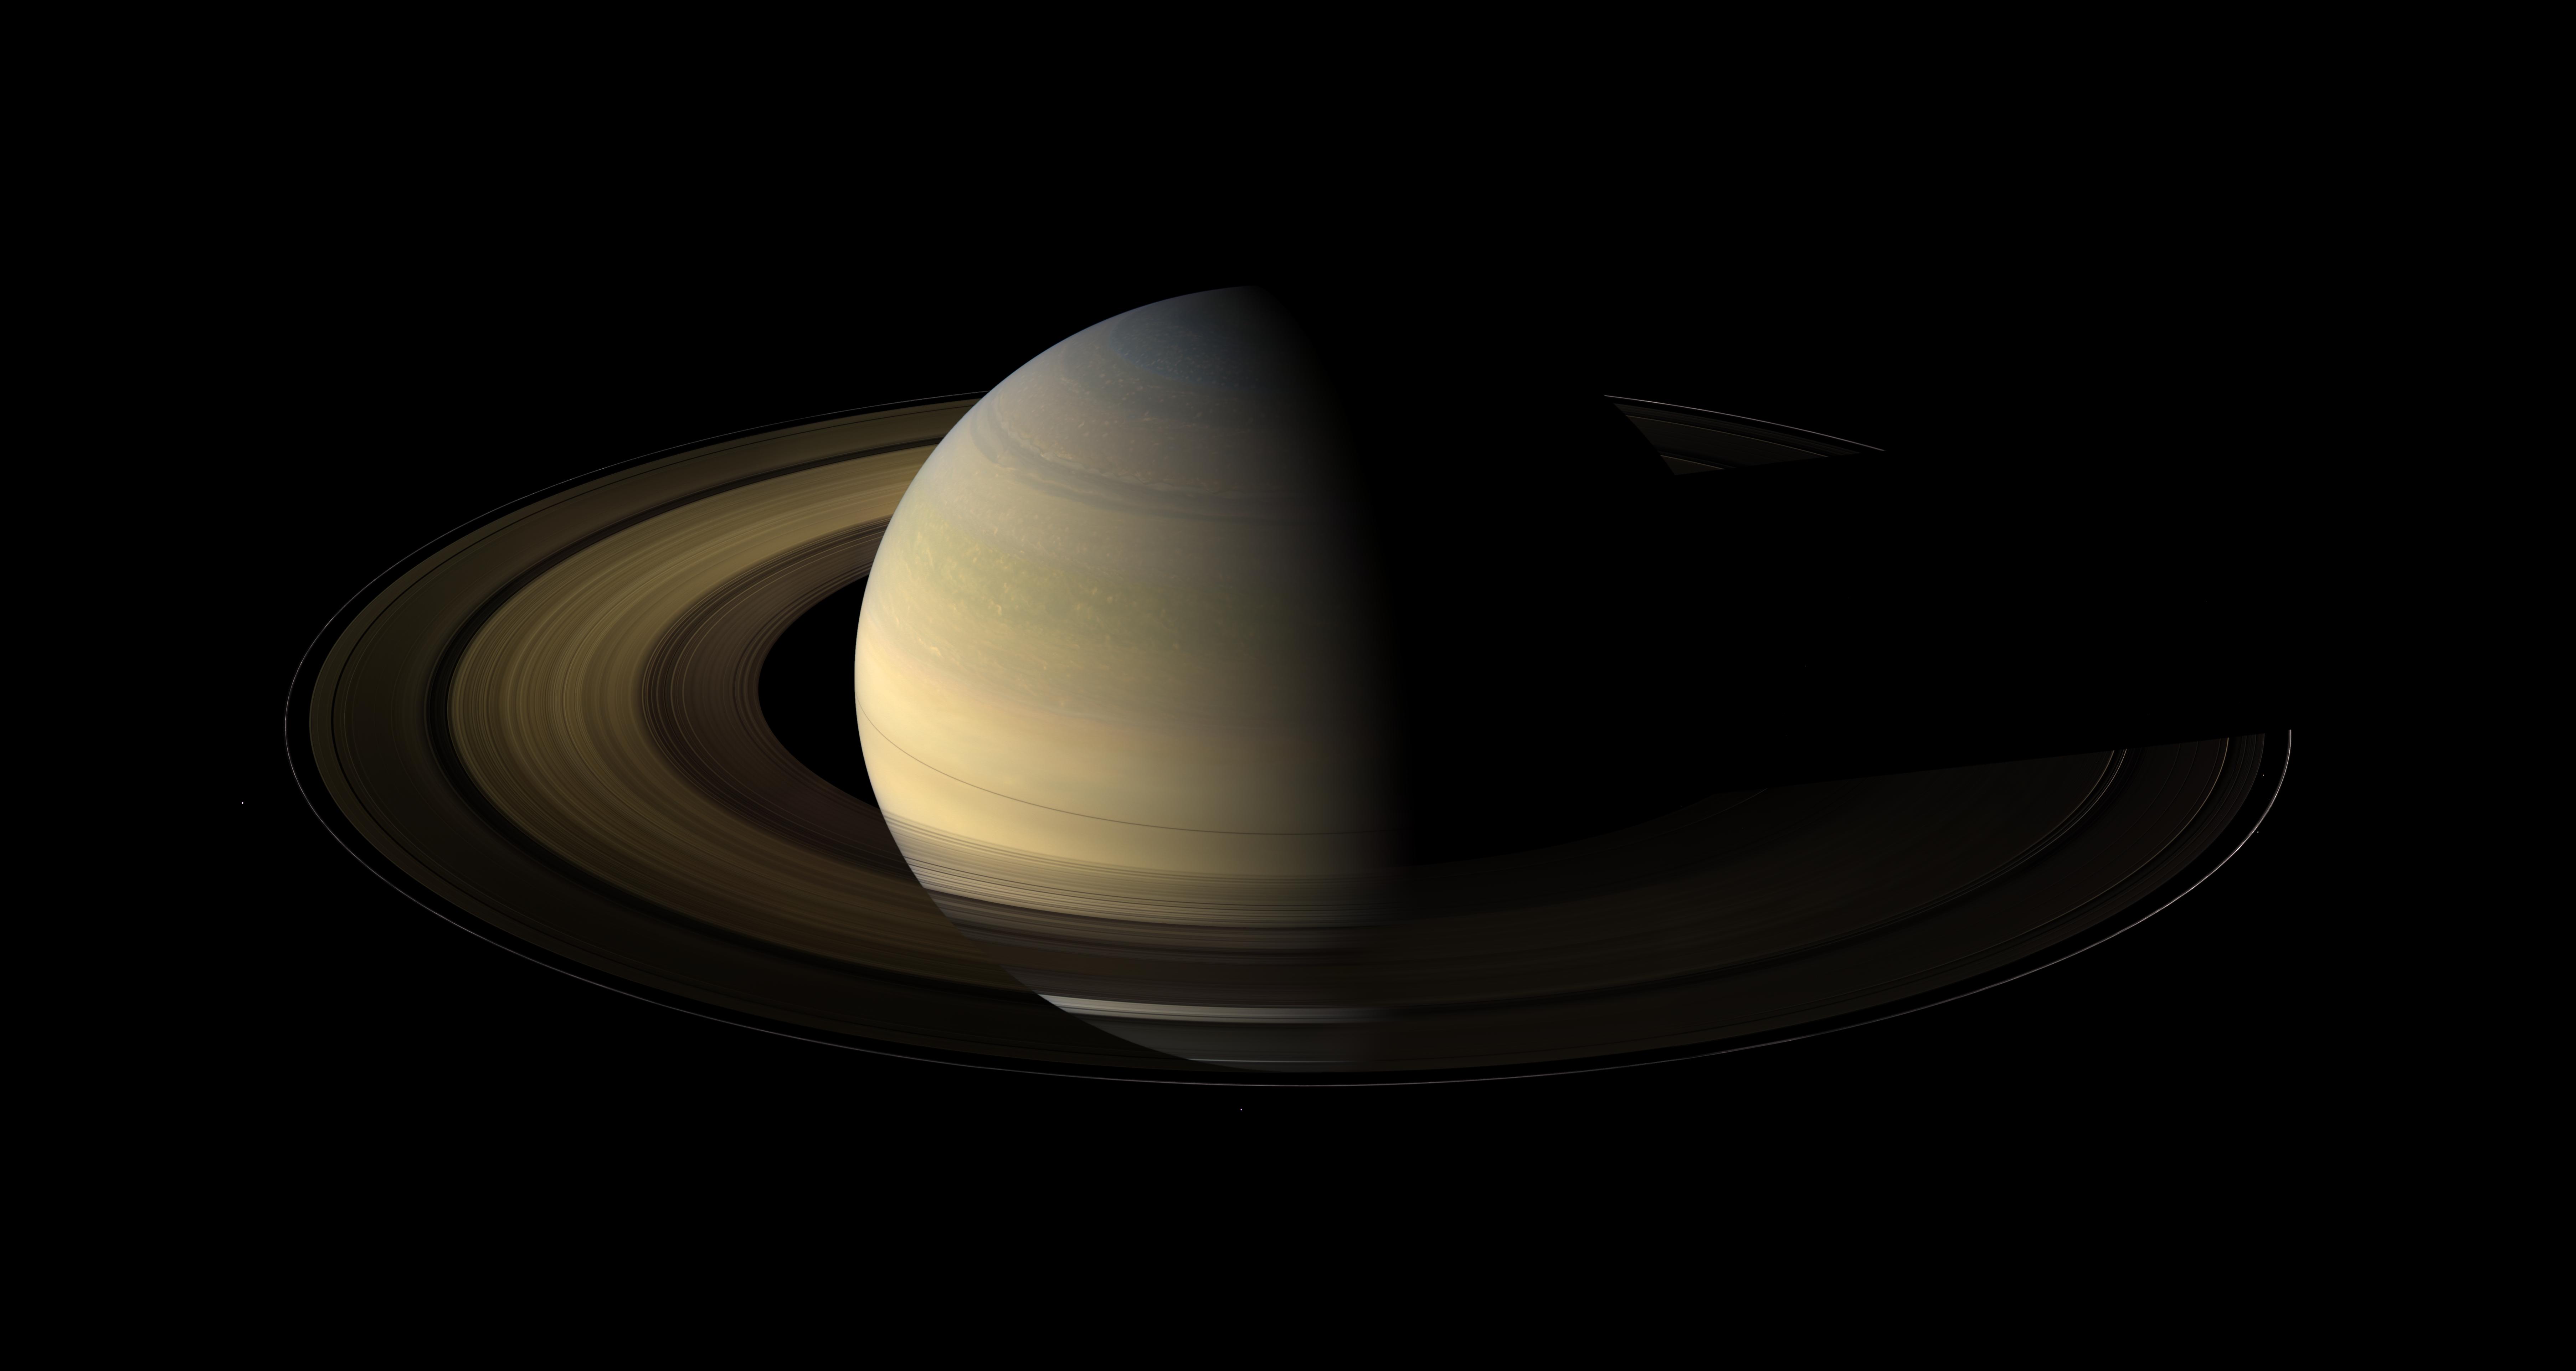 Saturn v ravnodenstvie